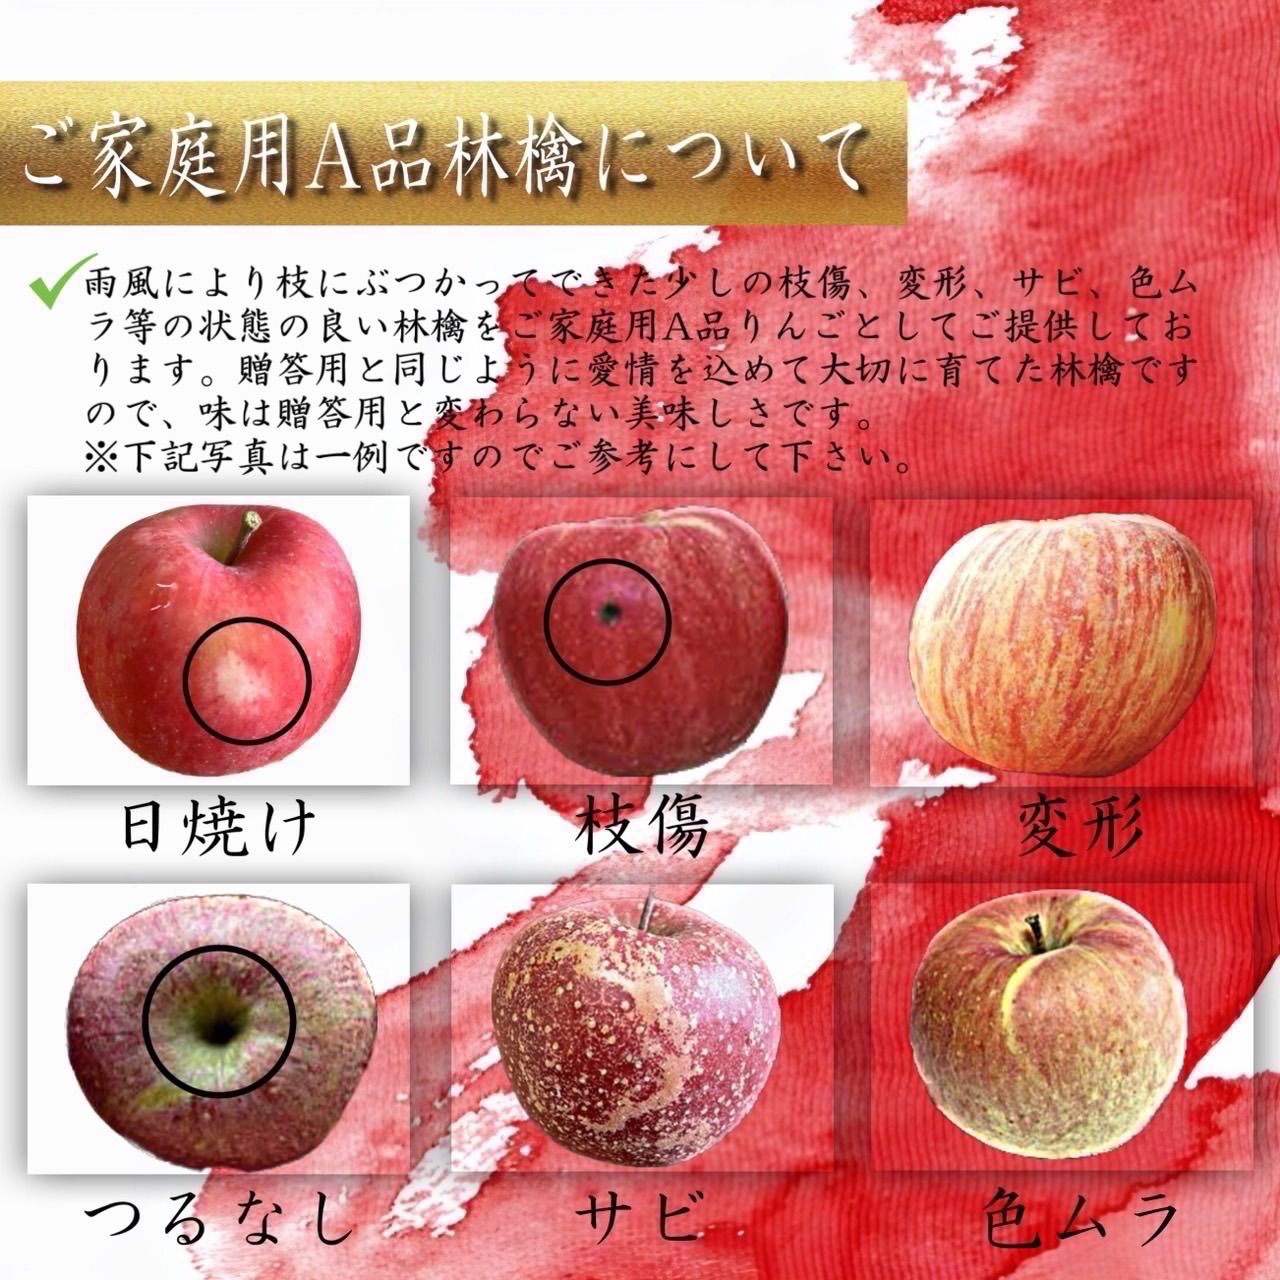 百花千果青森県産  はるか  りんご  家庭用  10kg  産地直送  リンゴ  林檎